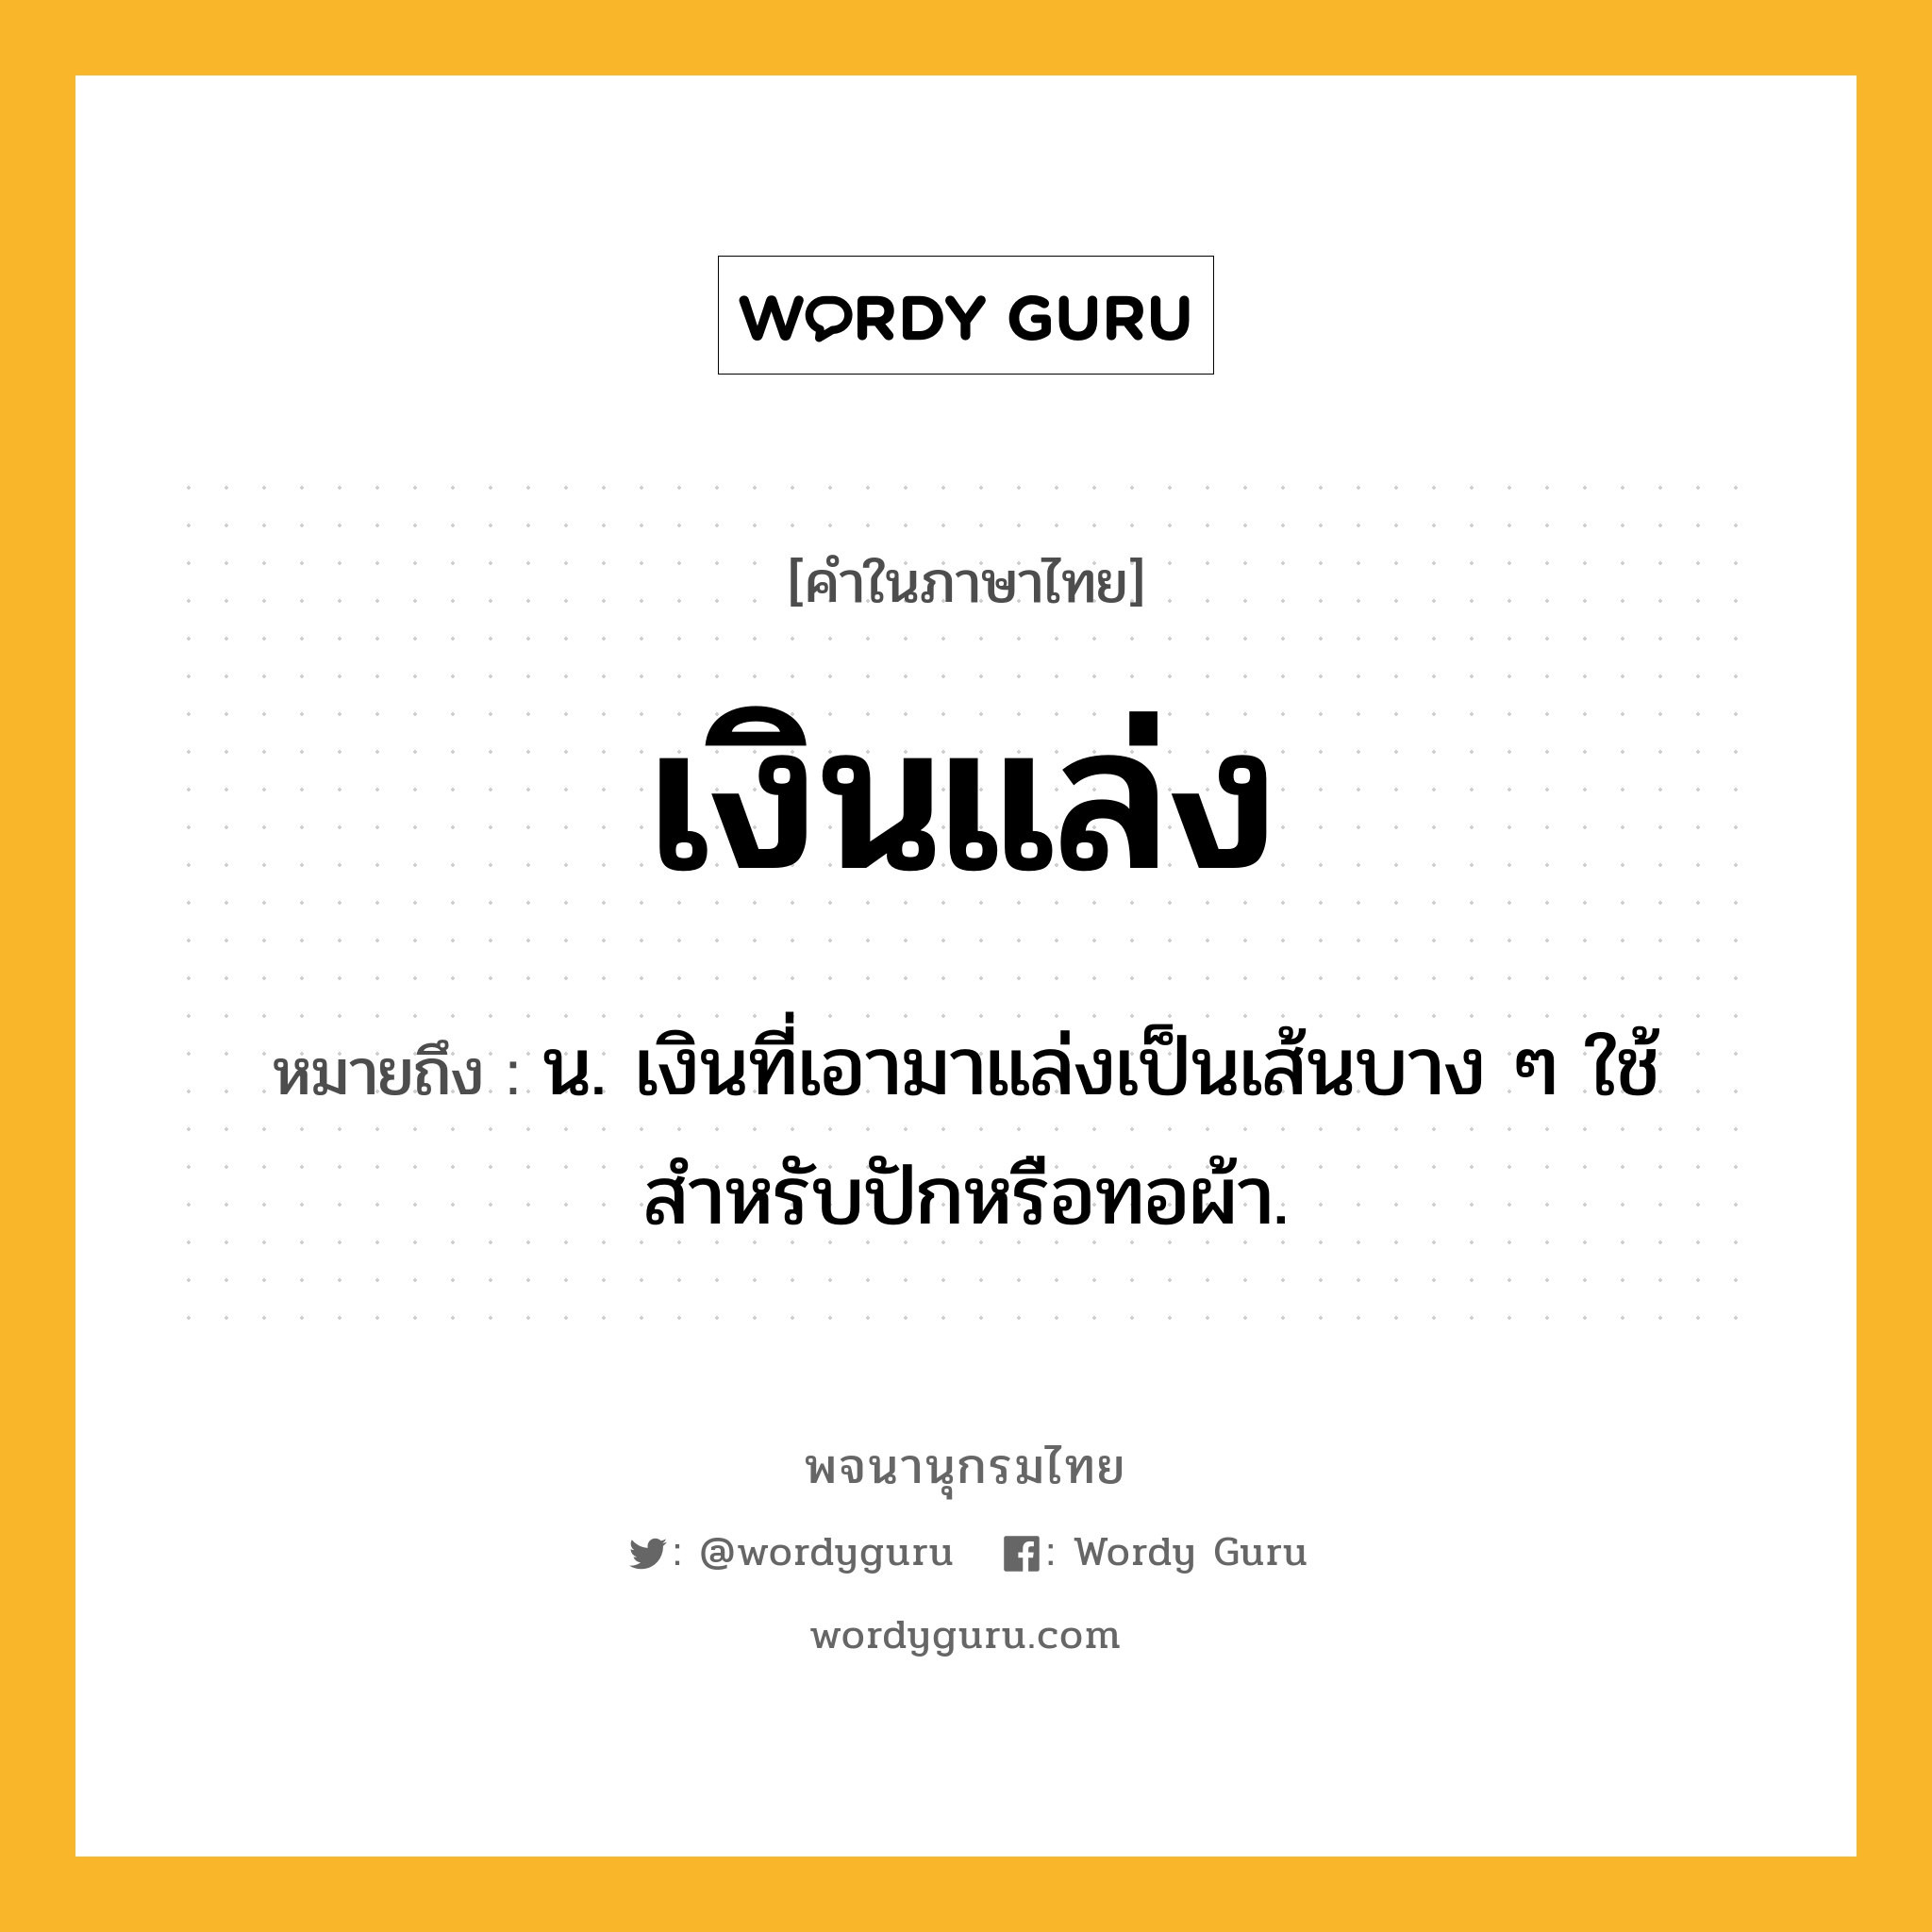 เงินแล่ง ความหมาย หมายถึงอะไร?, คำในภาษาไทย เงินแล่ง หมายถึง น. เงินที่เอามาแล่งเป็นเส้นบาง ๆ ใช้สำหรับปักหรือทอผ้า.